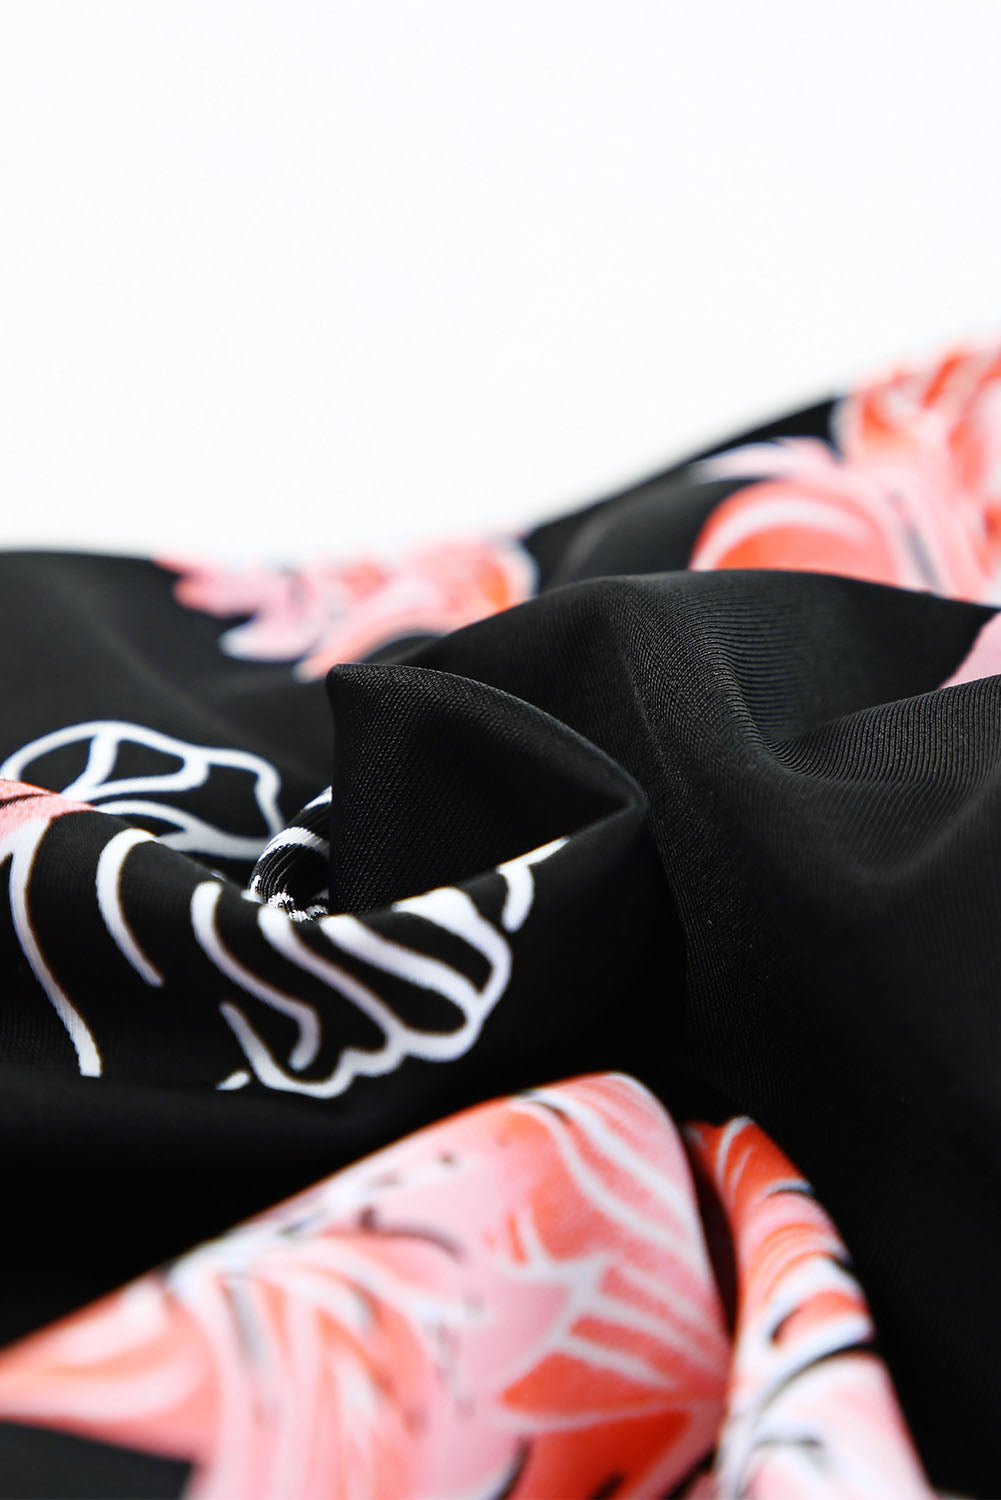 Crni bikini set s rebrastim gornjim dijelom s naborima i printom